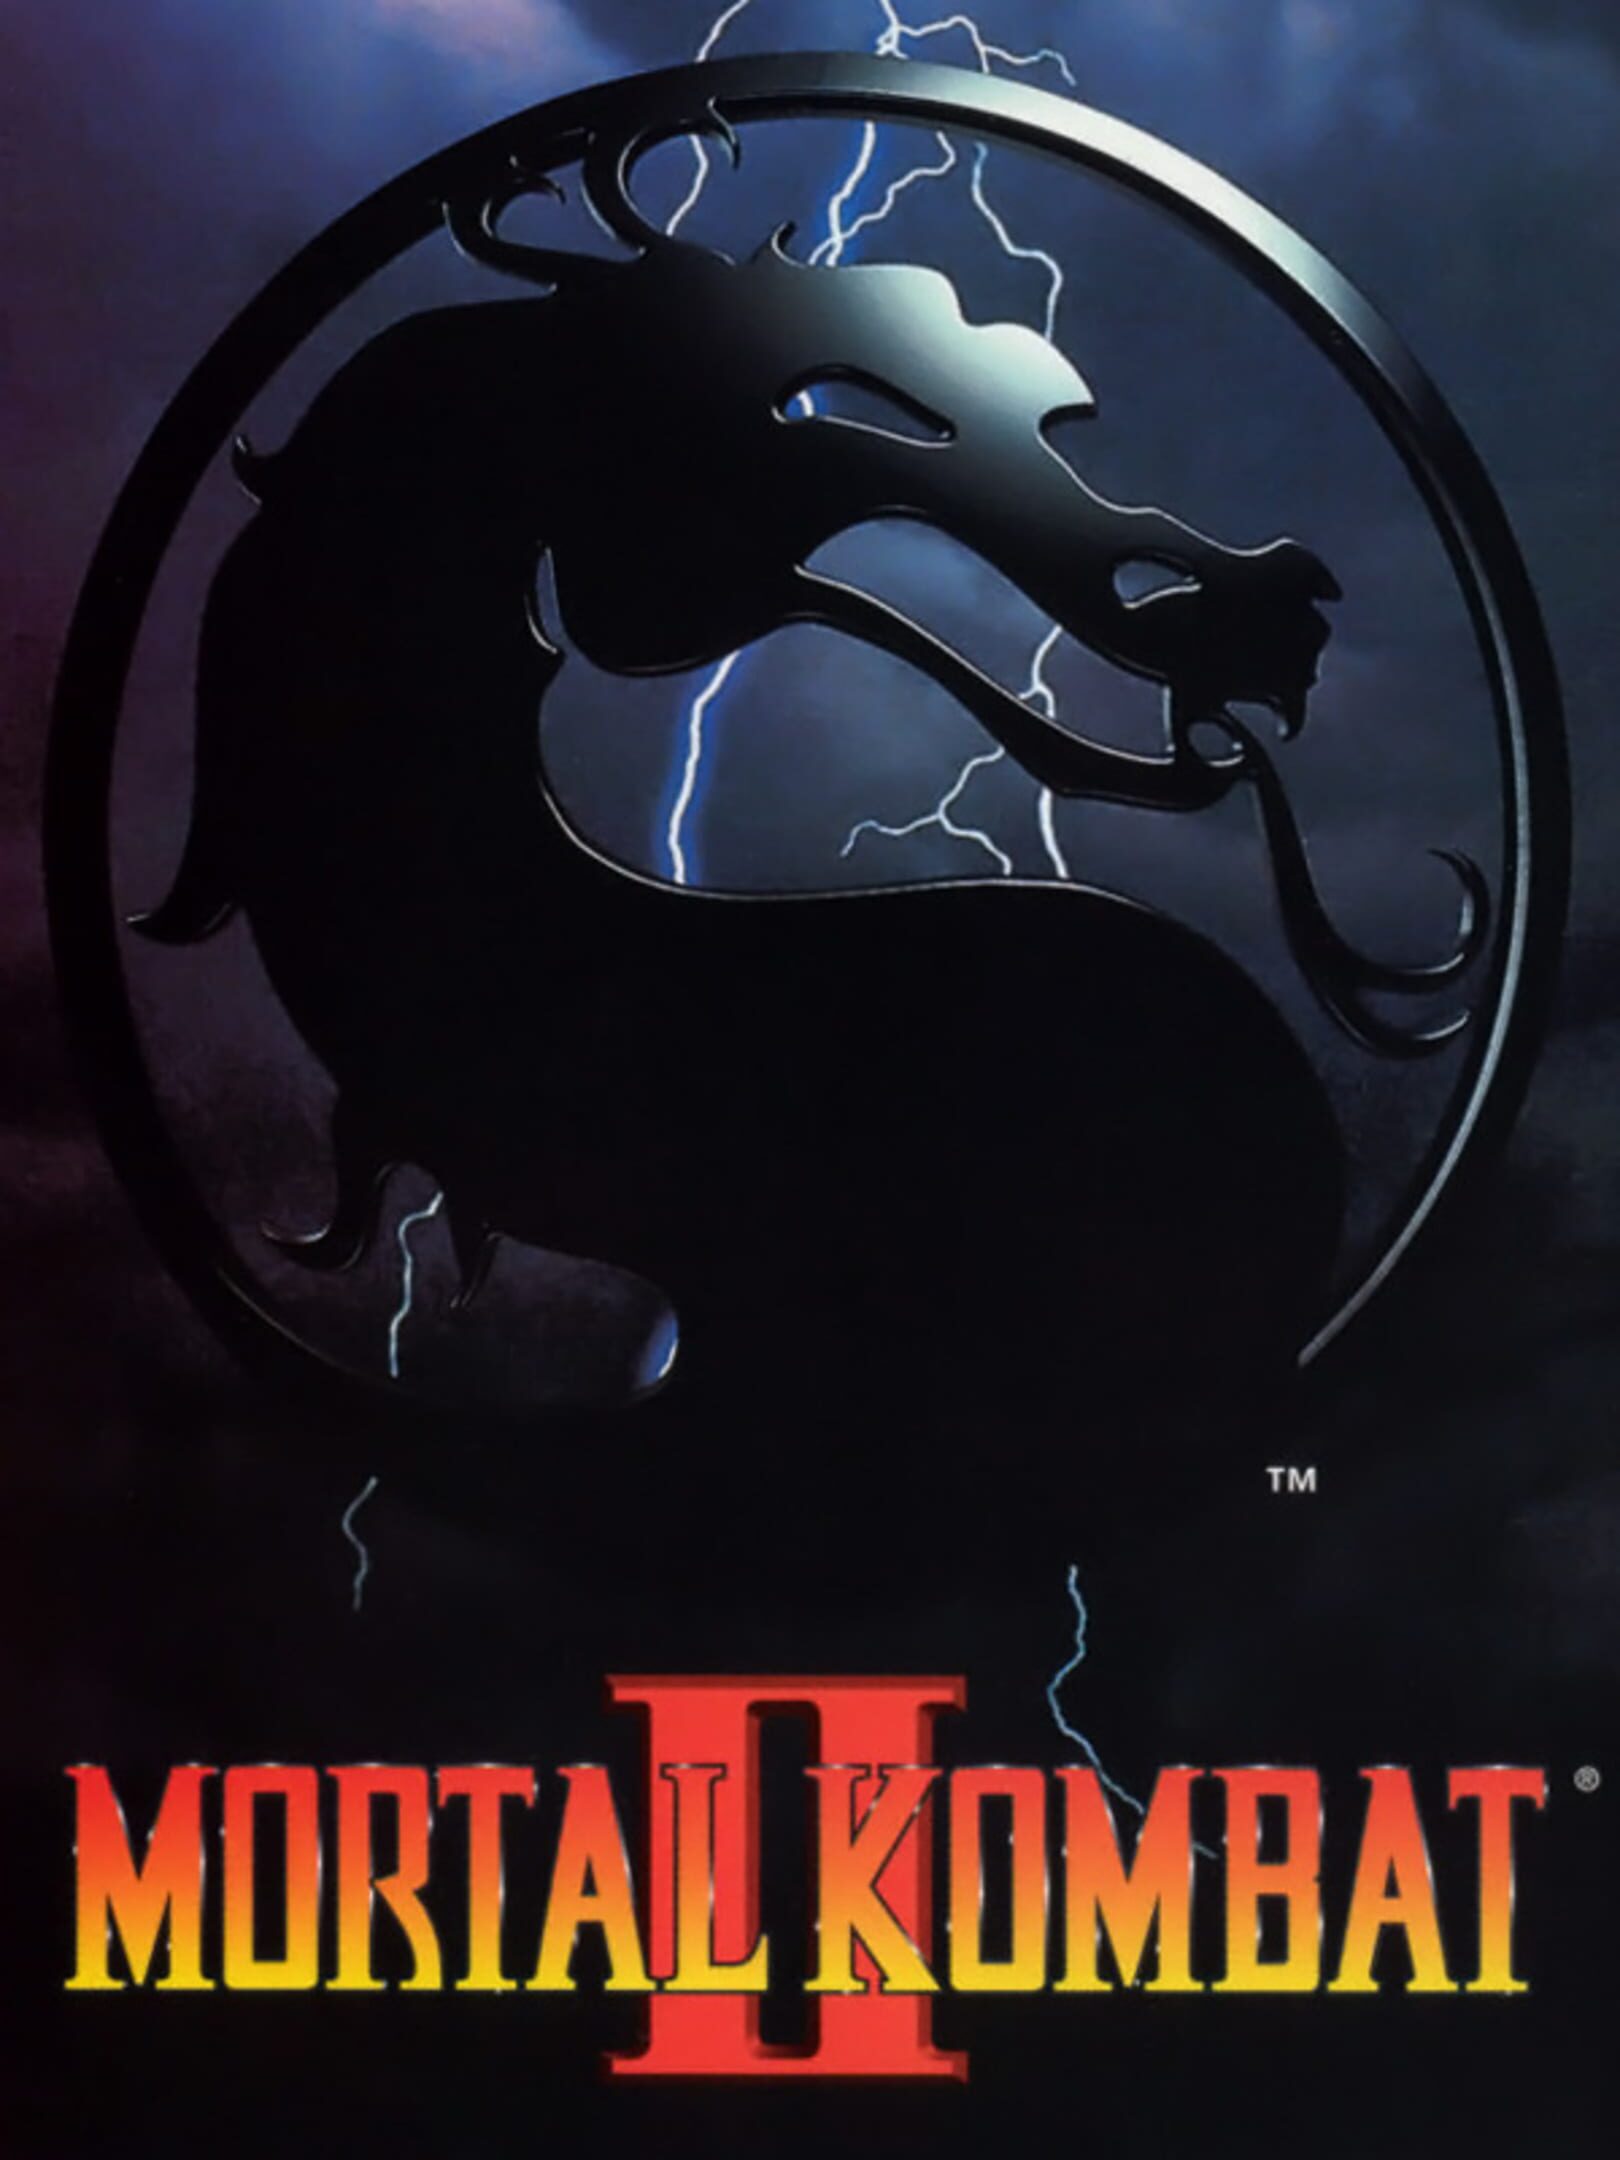 Mortal Kombat 2 arcade Shang Tsung Gameplay Playthrough 